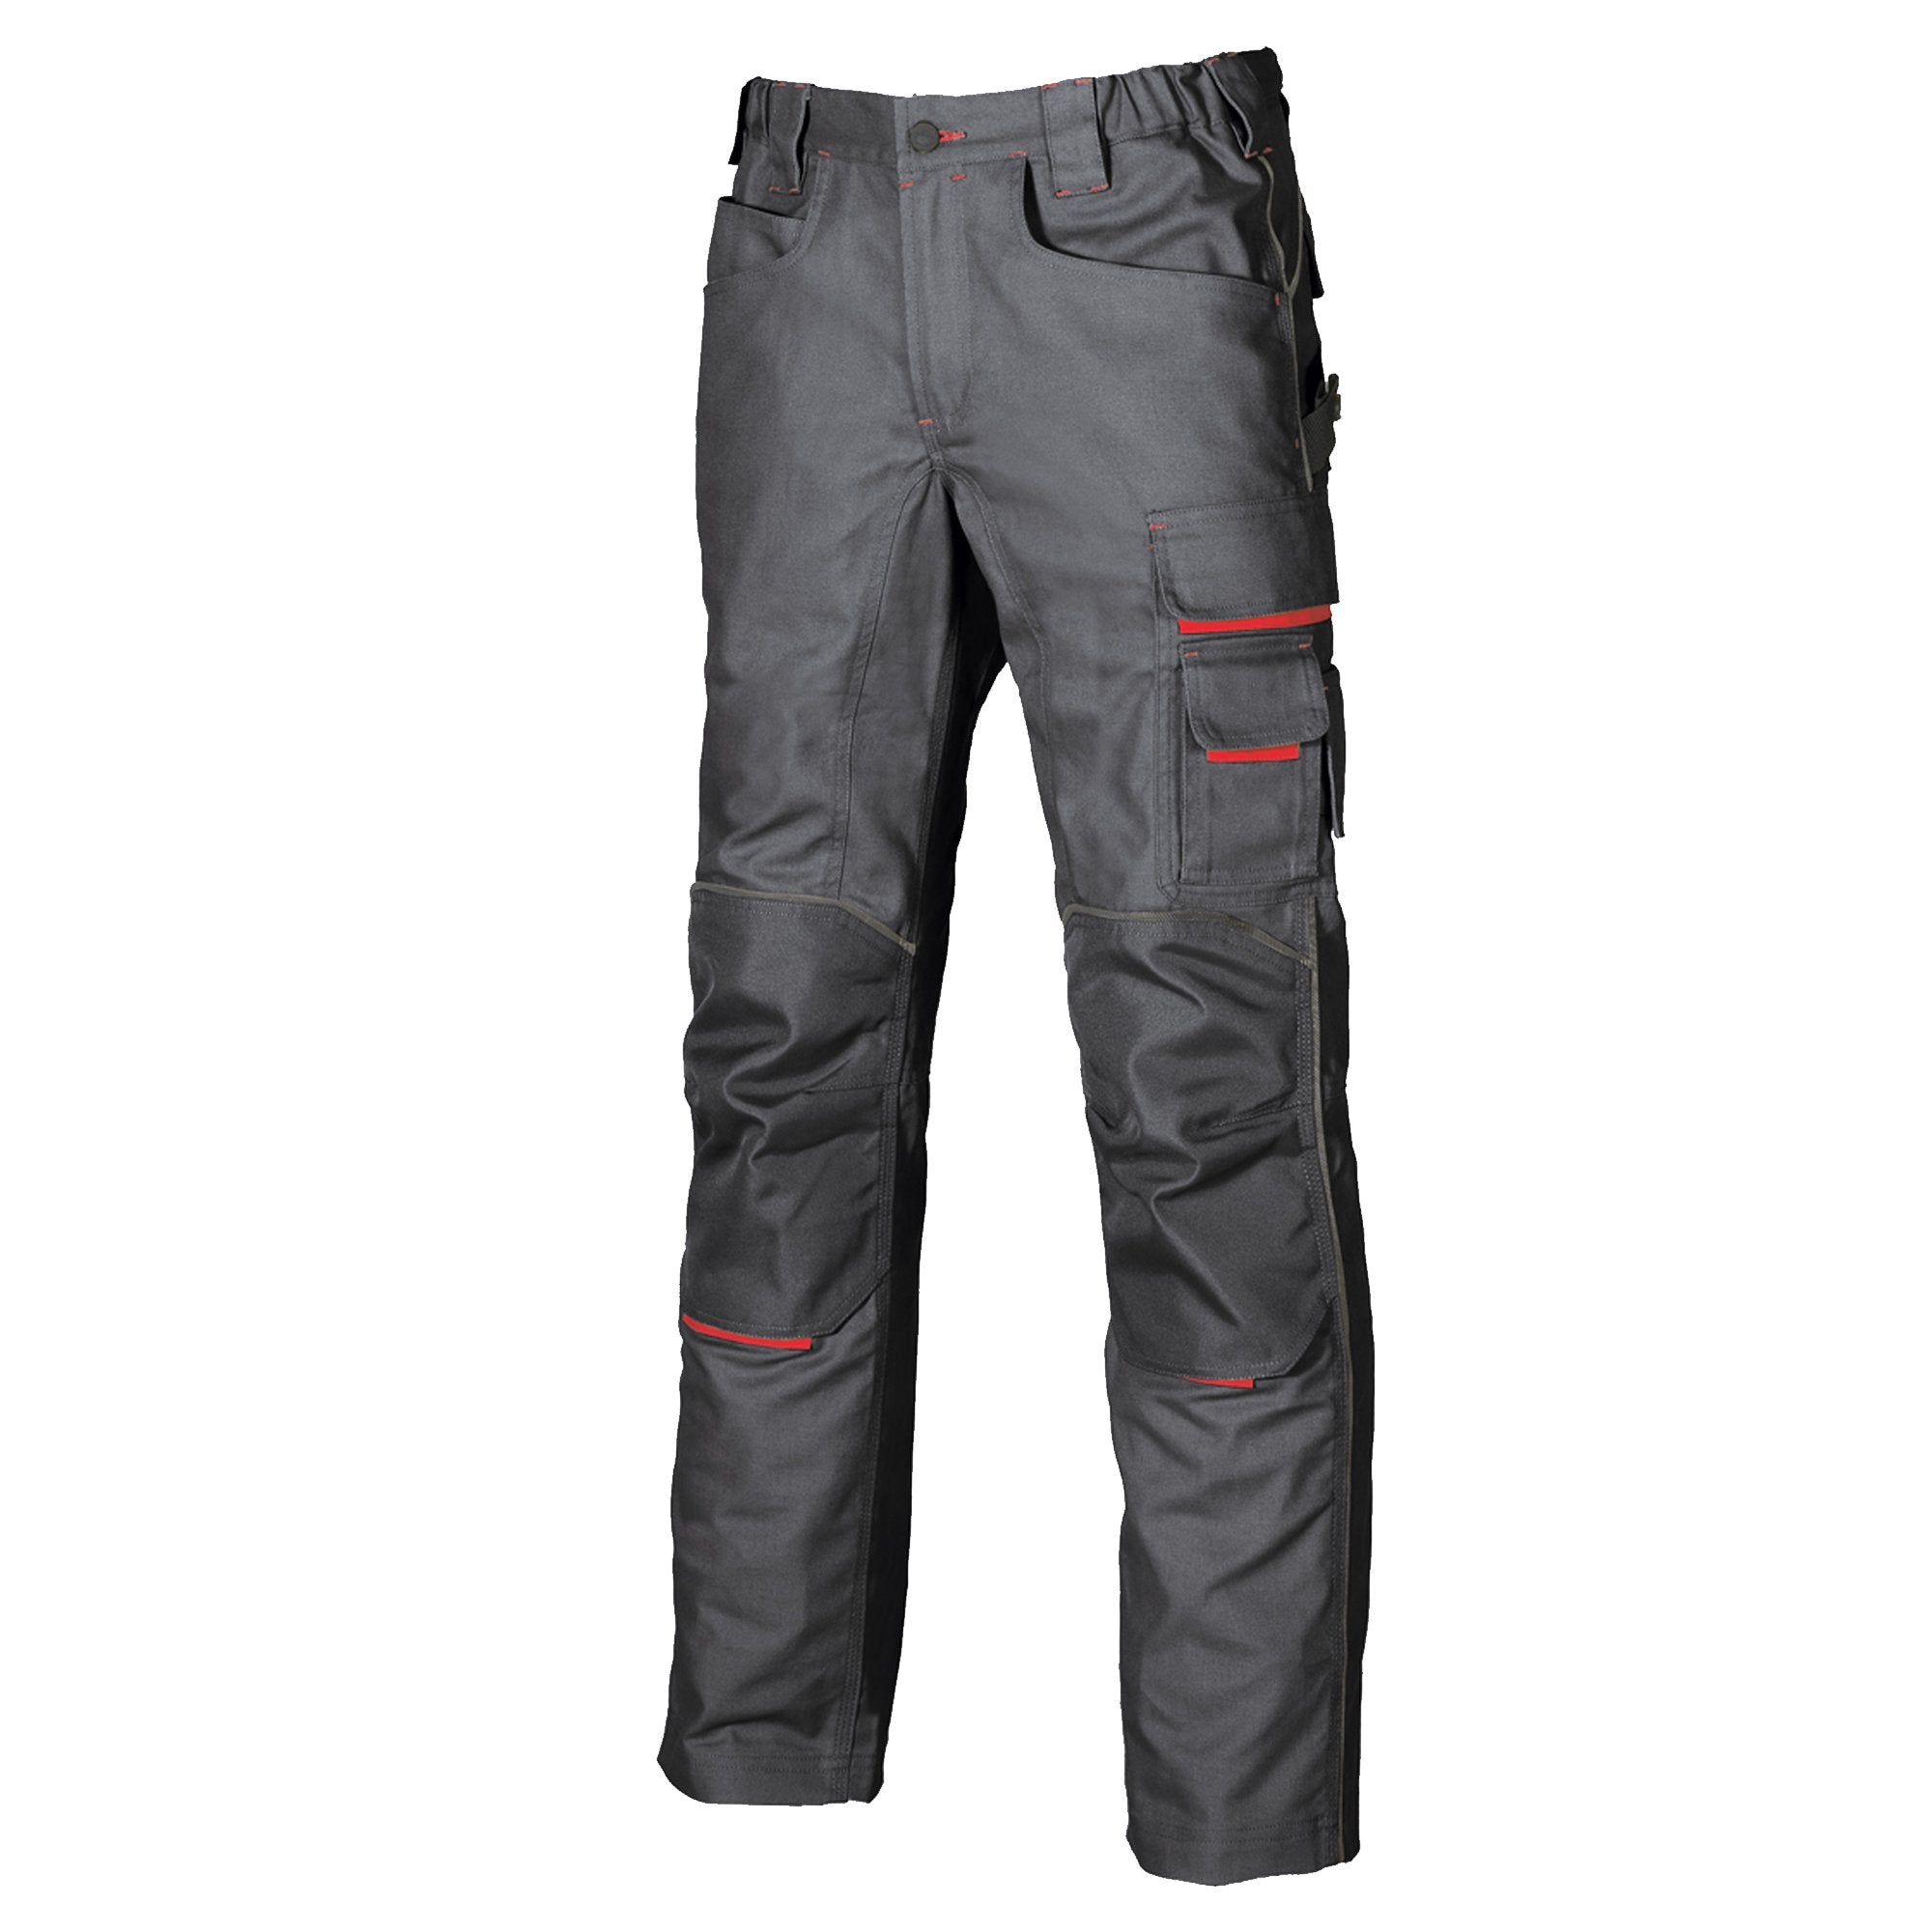 u-power-pantaloni-lavoro-invernali-free-taglia-52-grigio